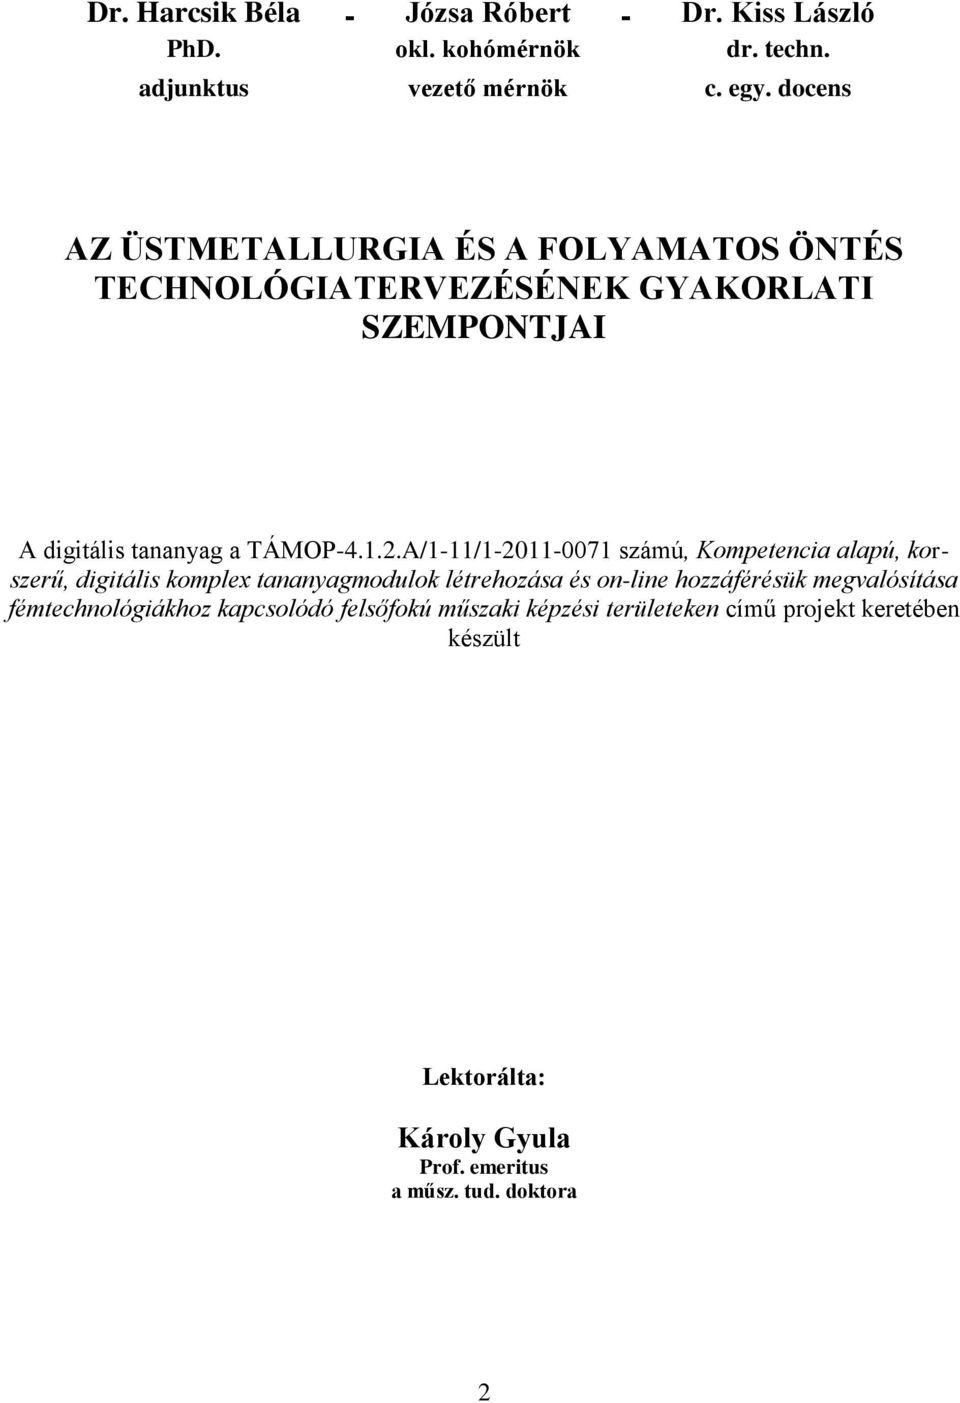 A/1-11/1-2011-0071 számú, Kompetencia alapú, korszerű, digitális komplex tananyagmodulok létrehozása és on-line hozzáférésük